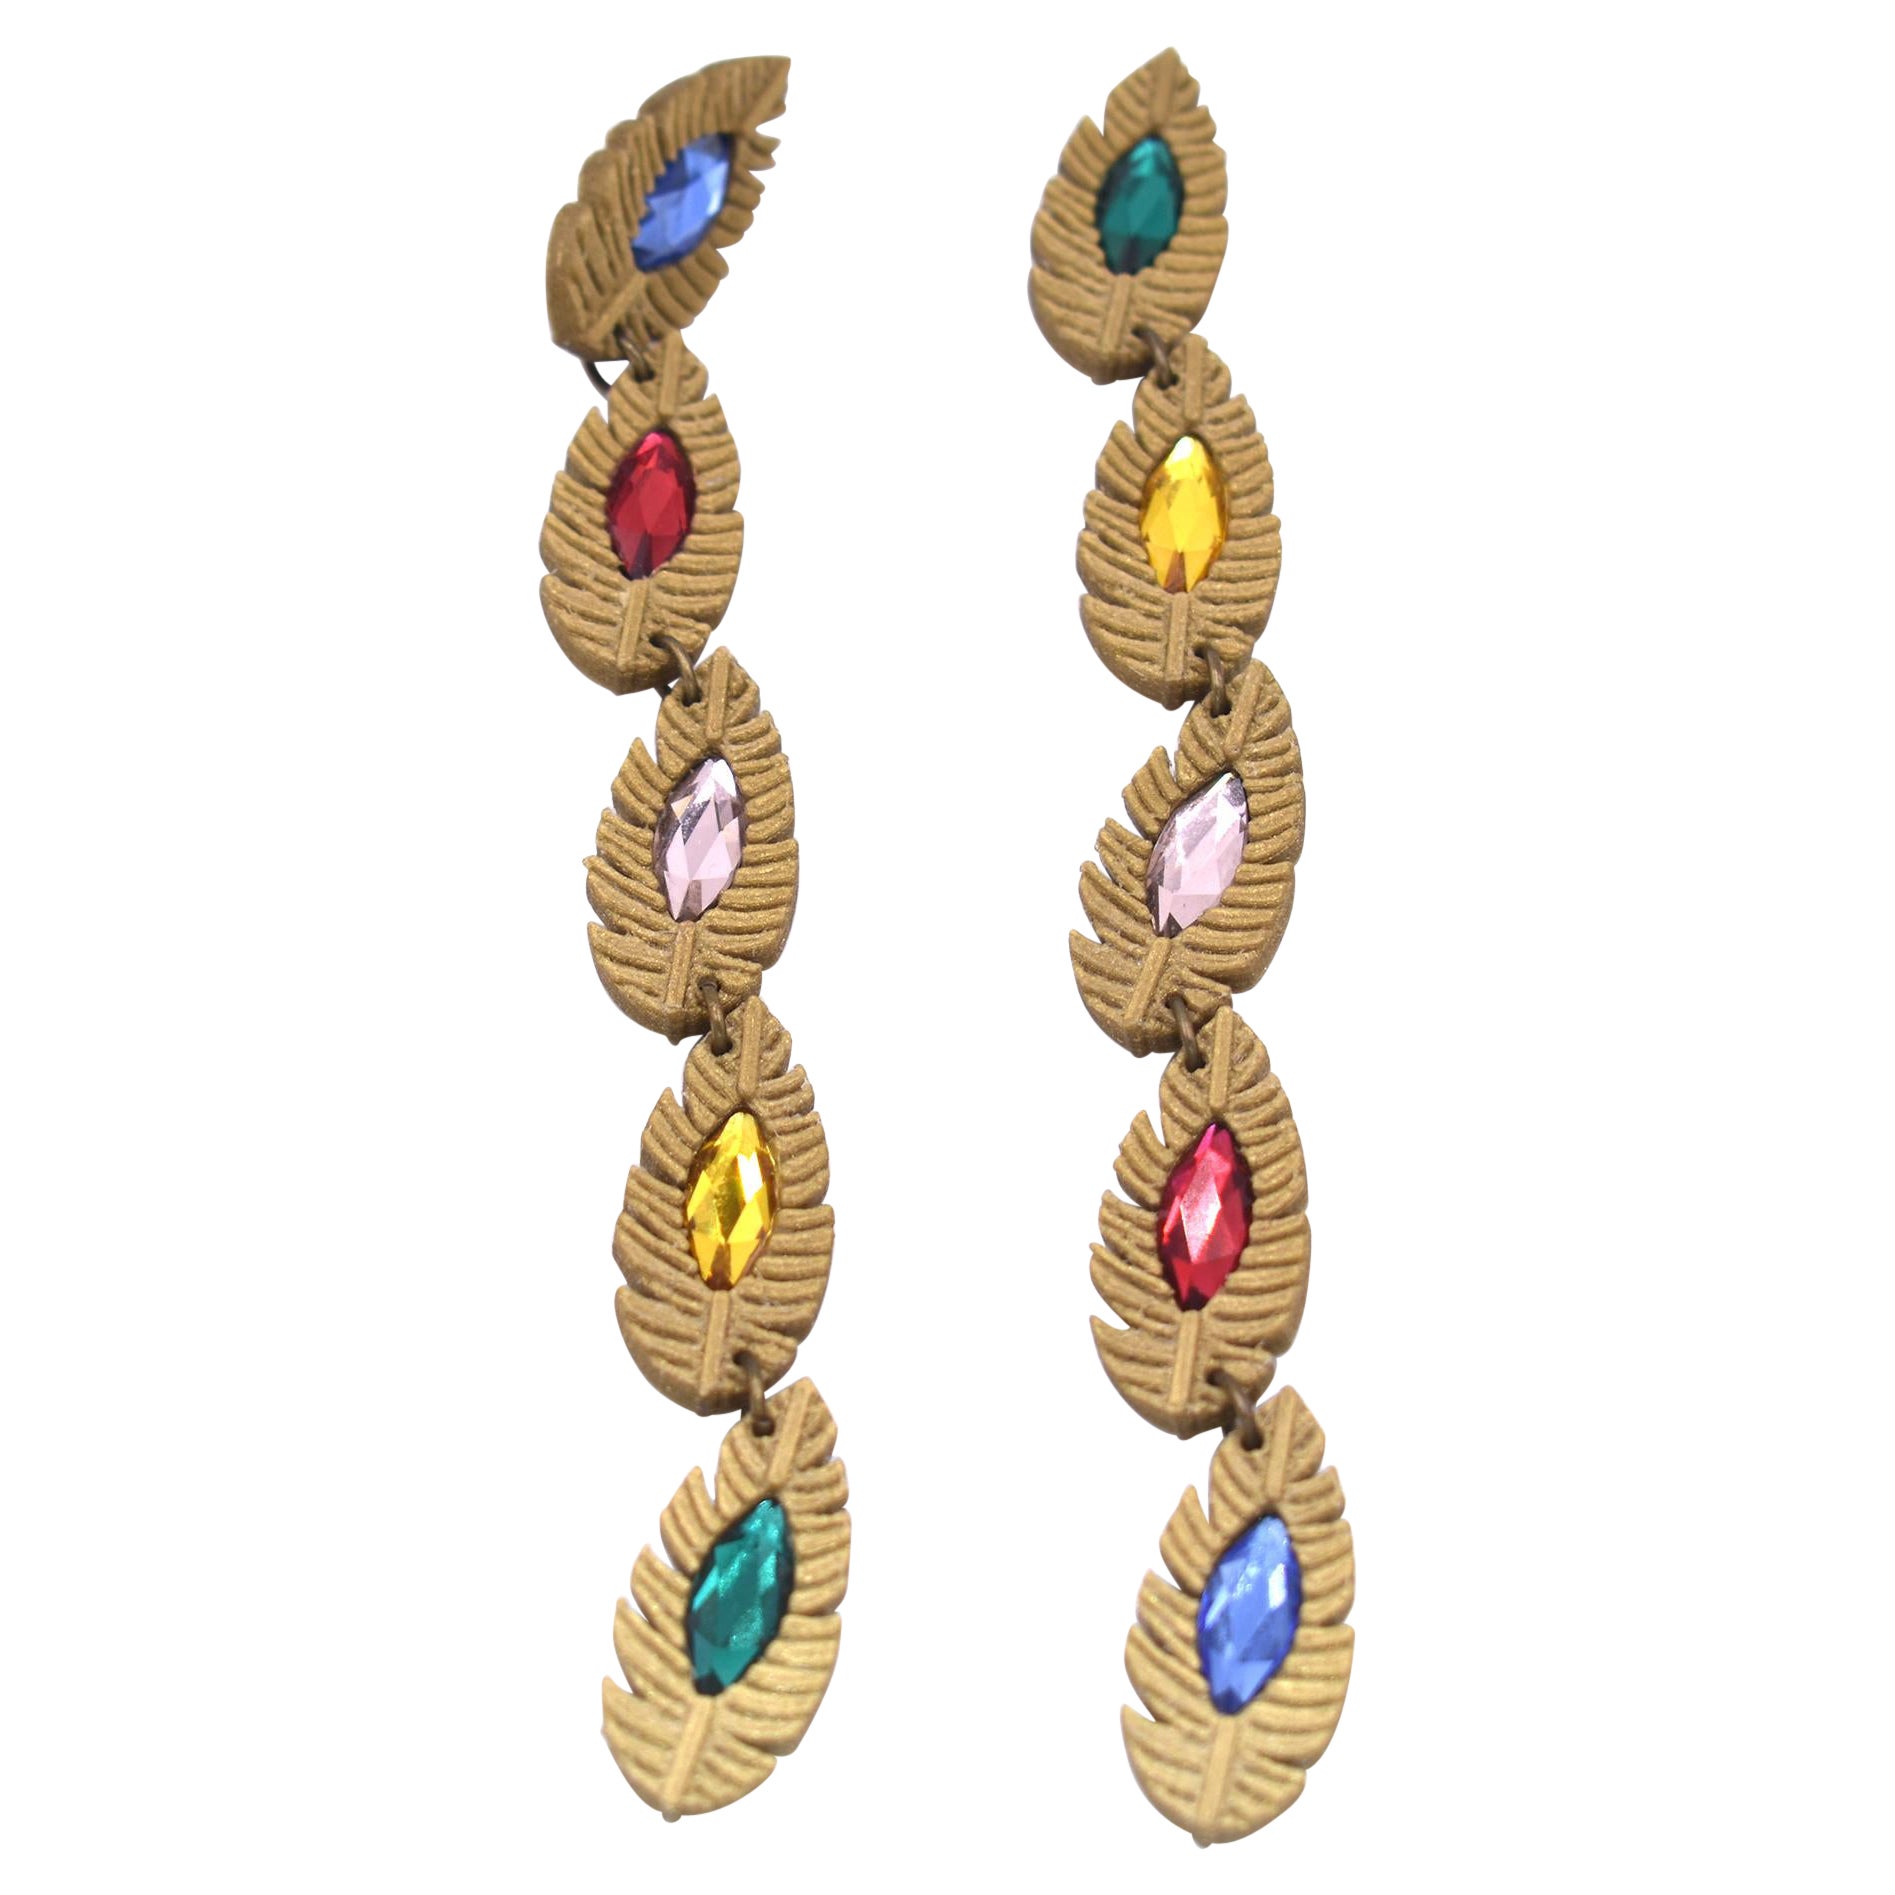 3d Printed Bronze Swarovski Crystal Fool's Paradise Earrings